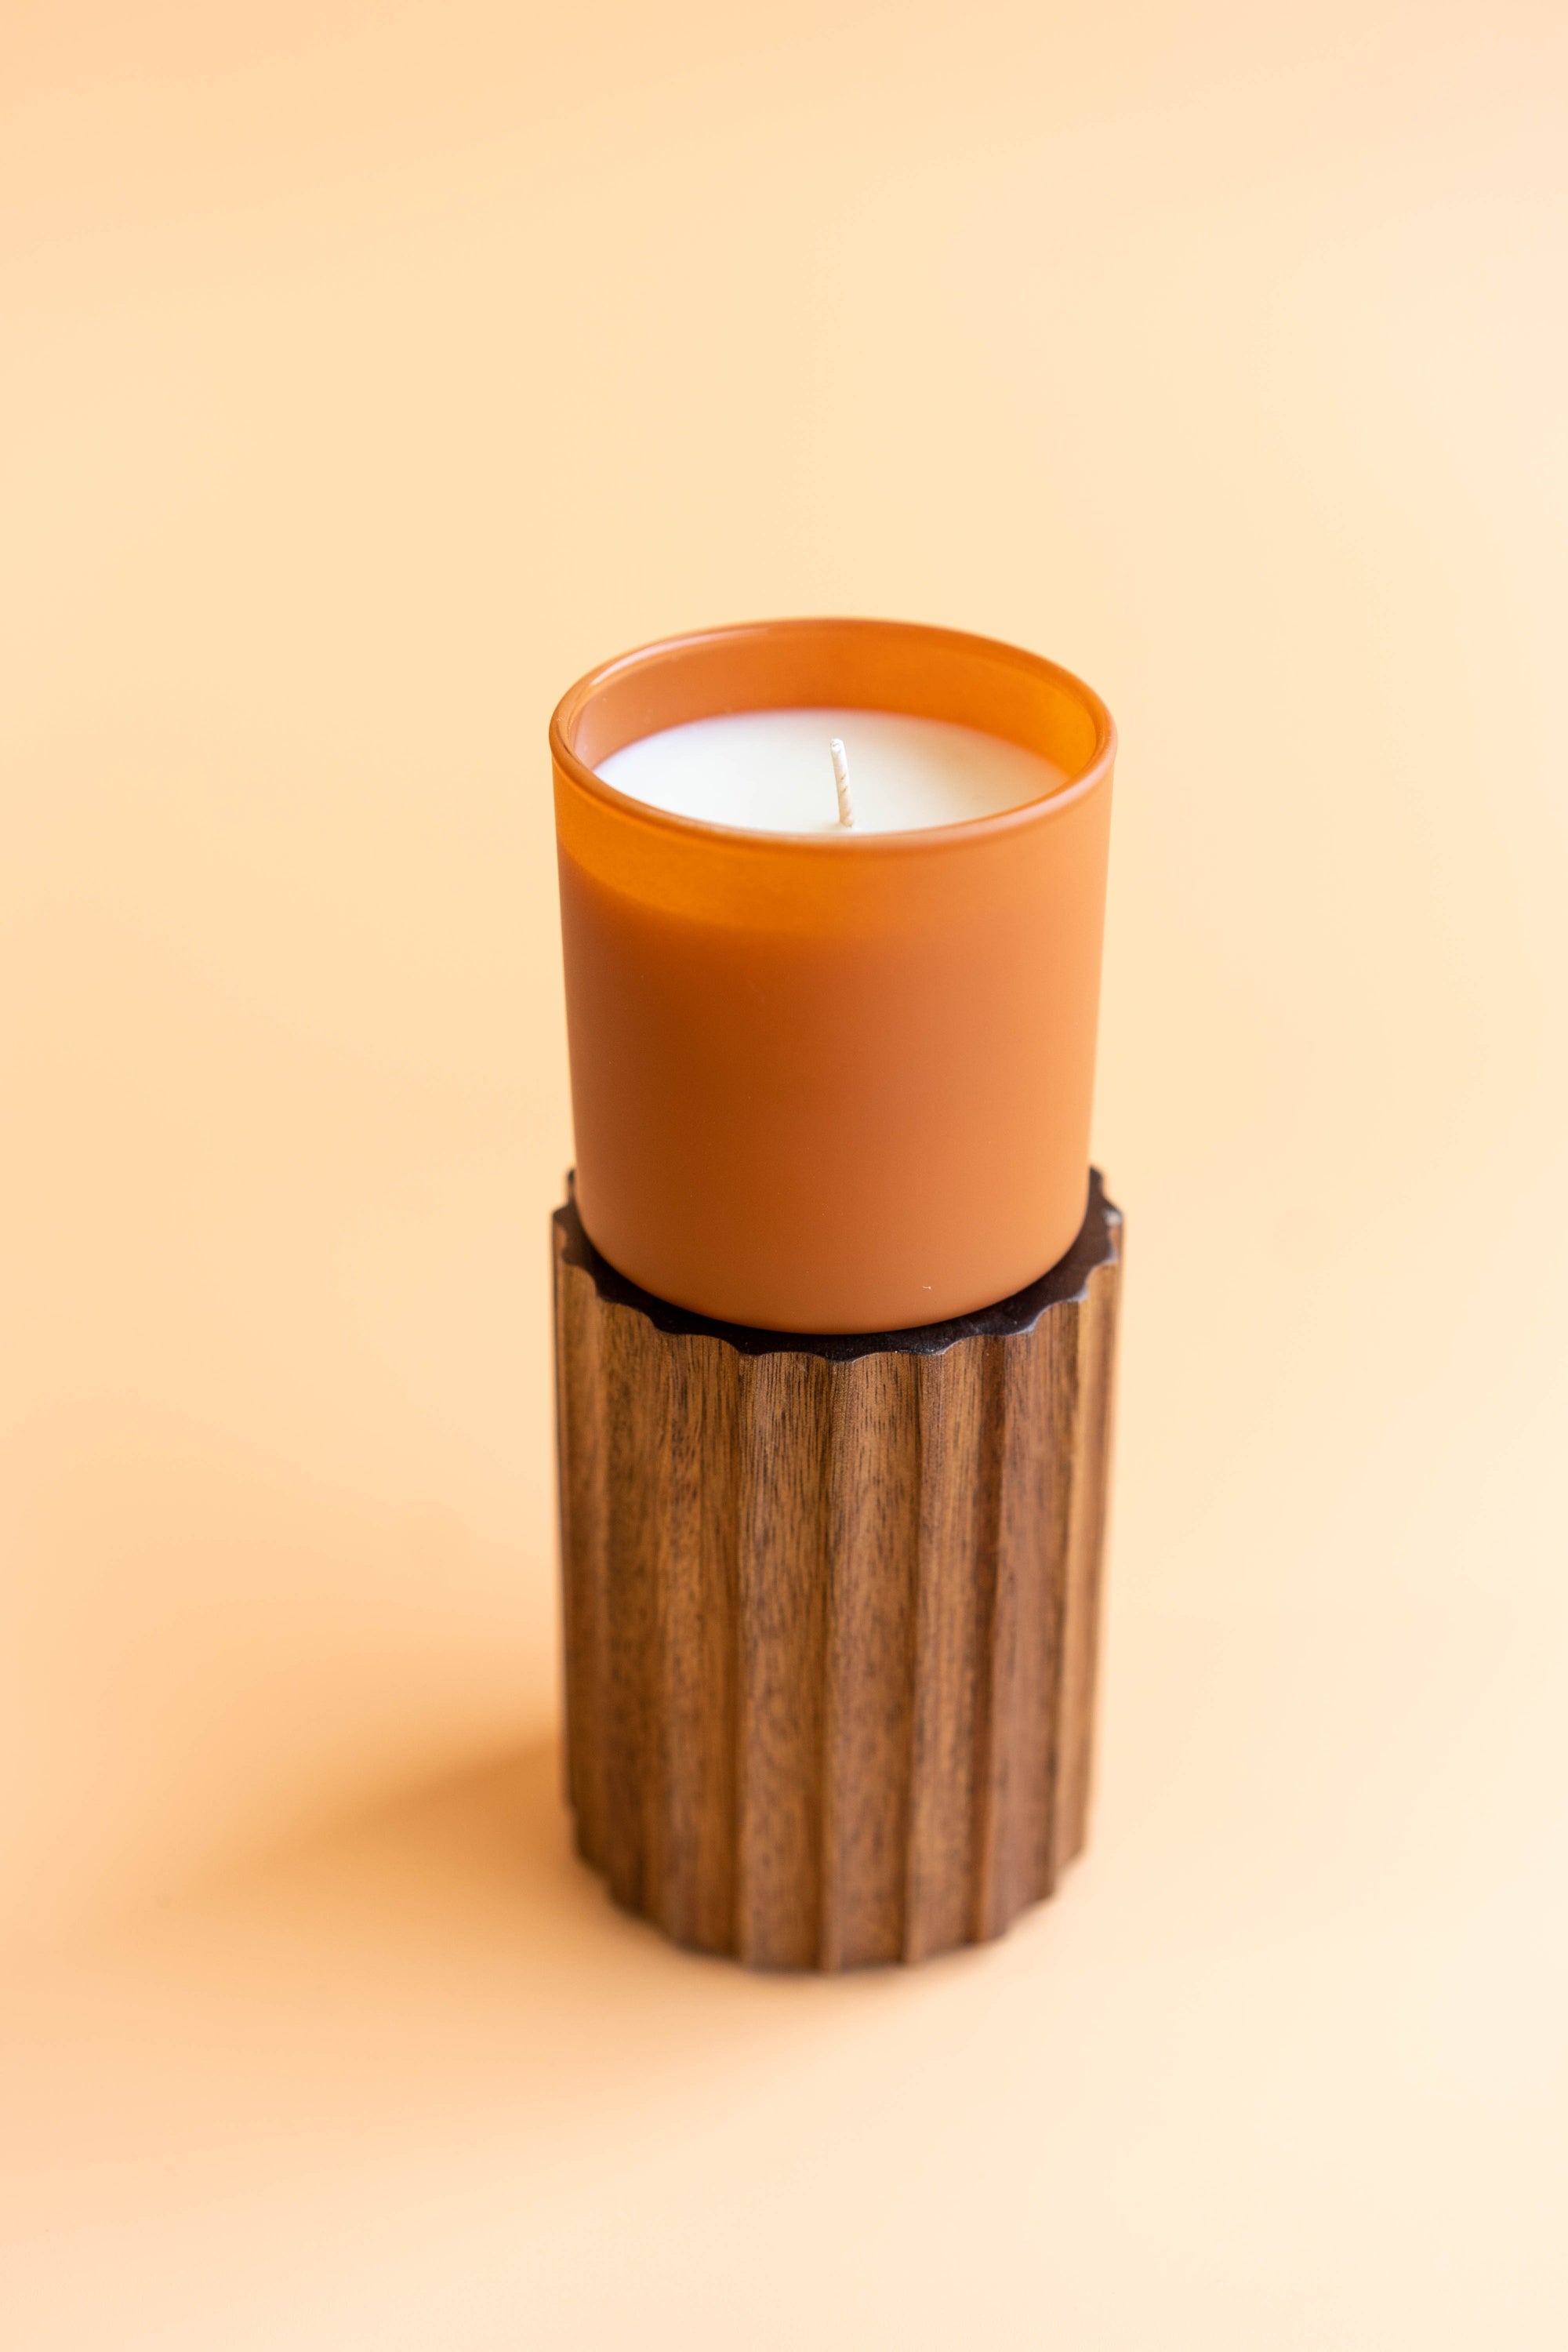 Cedar + Tobacco Dignity Series Glass Jar Soy Candle | Calyan Wax Co. - 5.3 oz